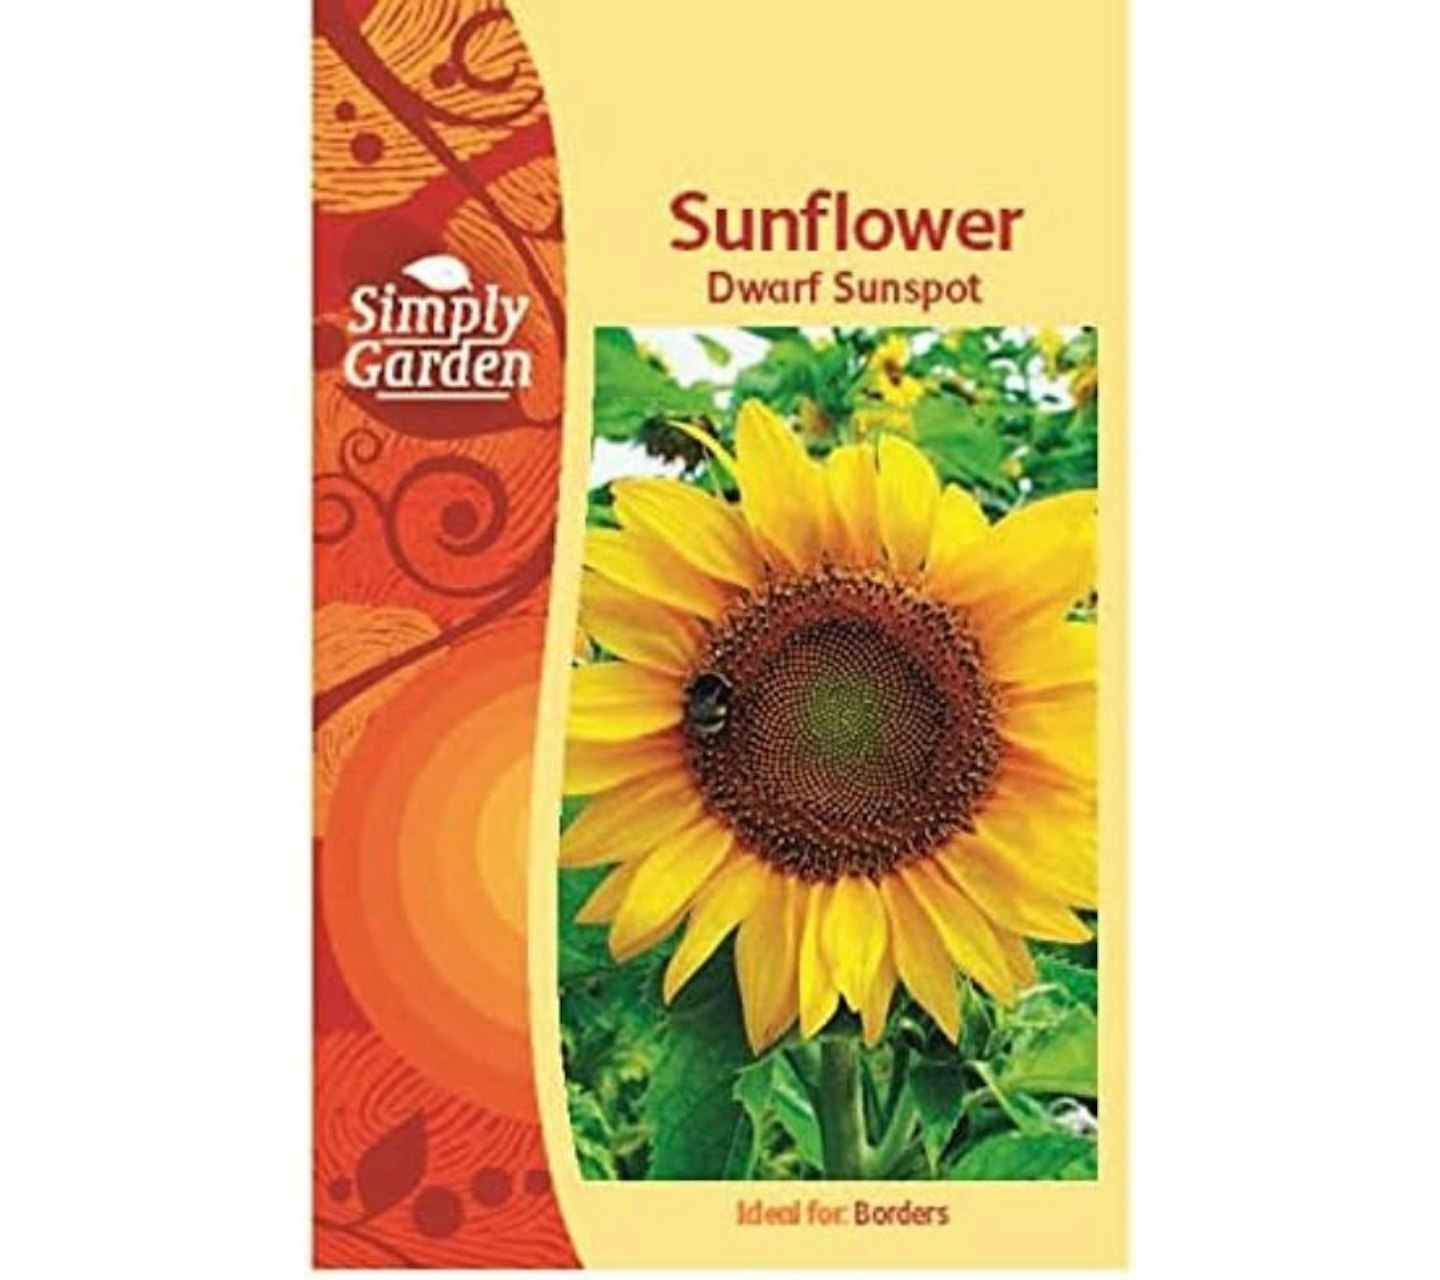 Simply Garden Dwarf Sunspot Sunflower Seeds